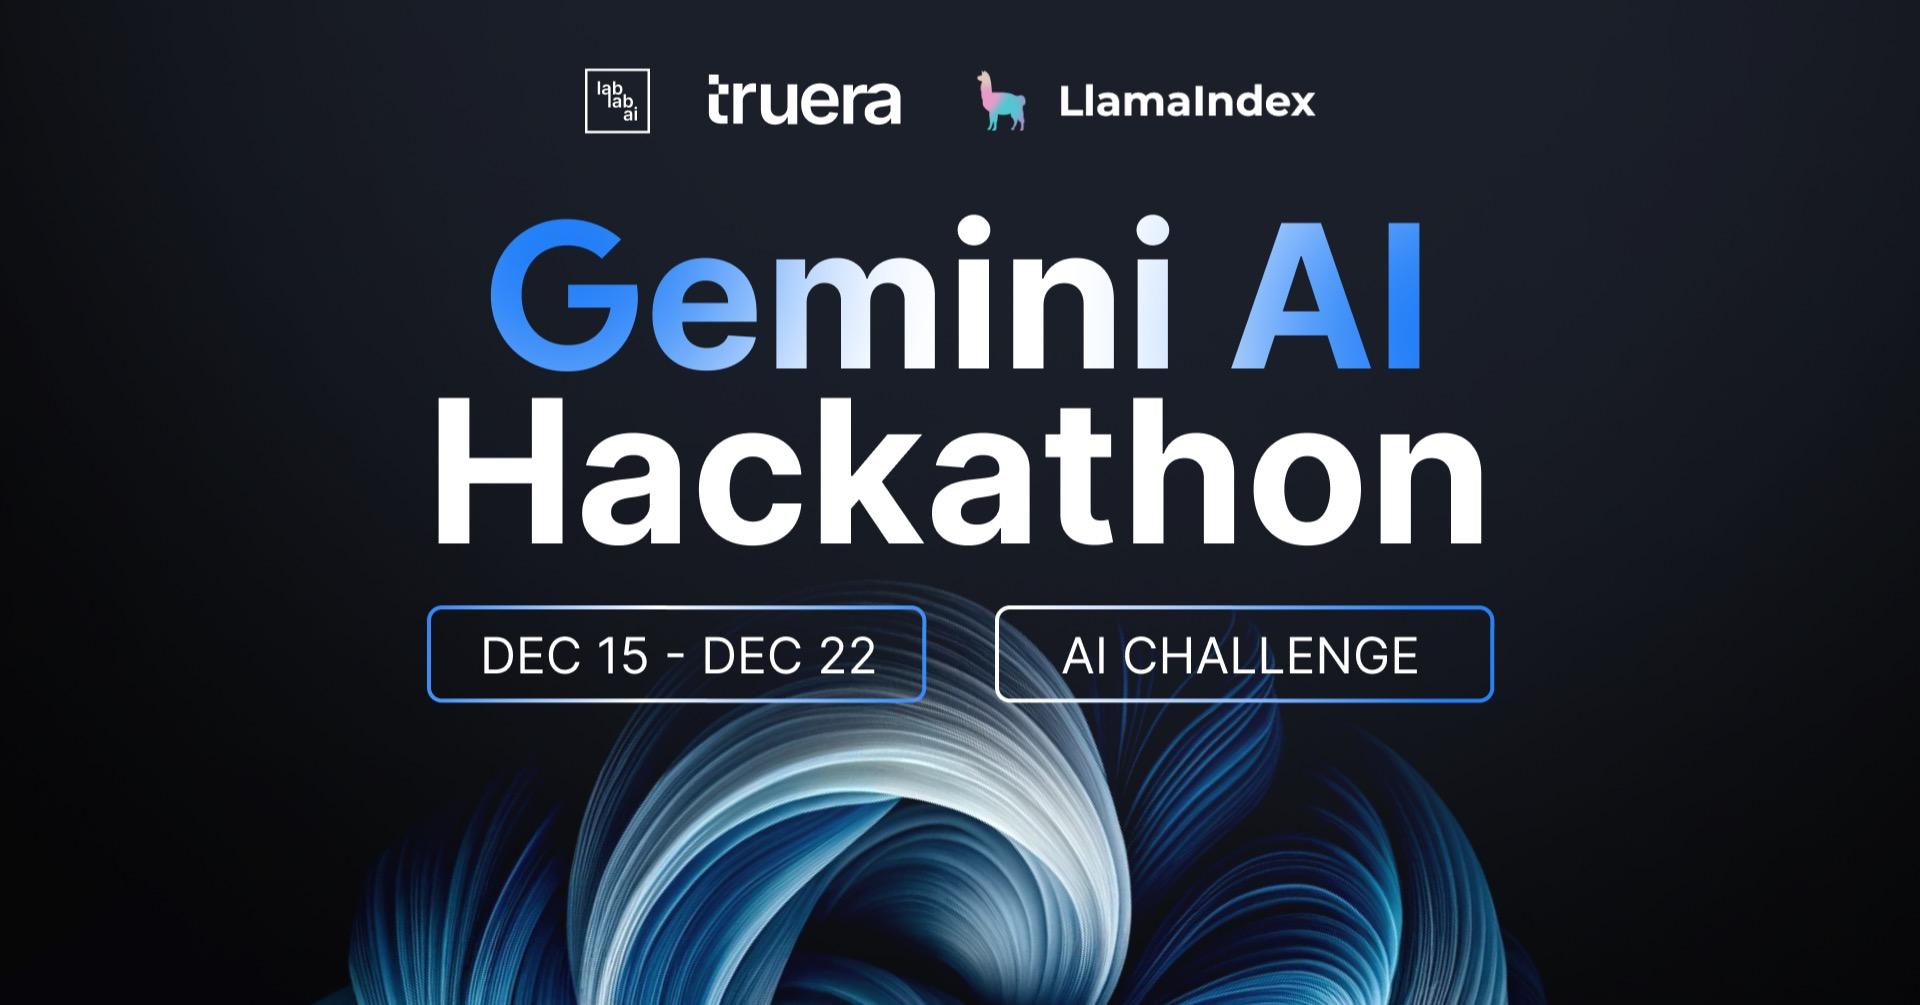 Gemini AI Hackathon image